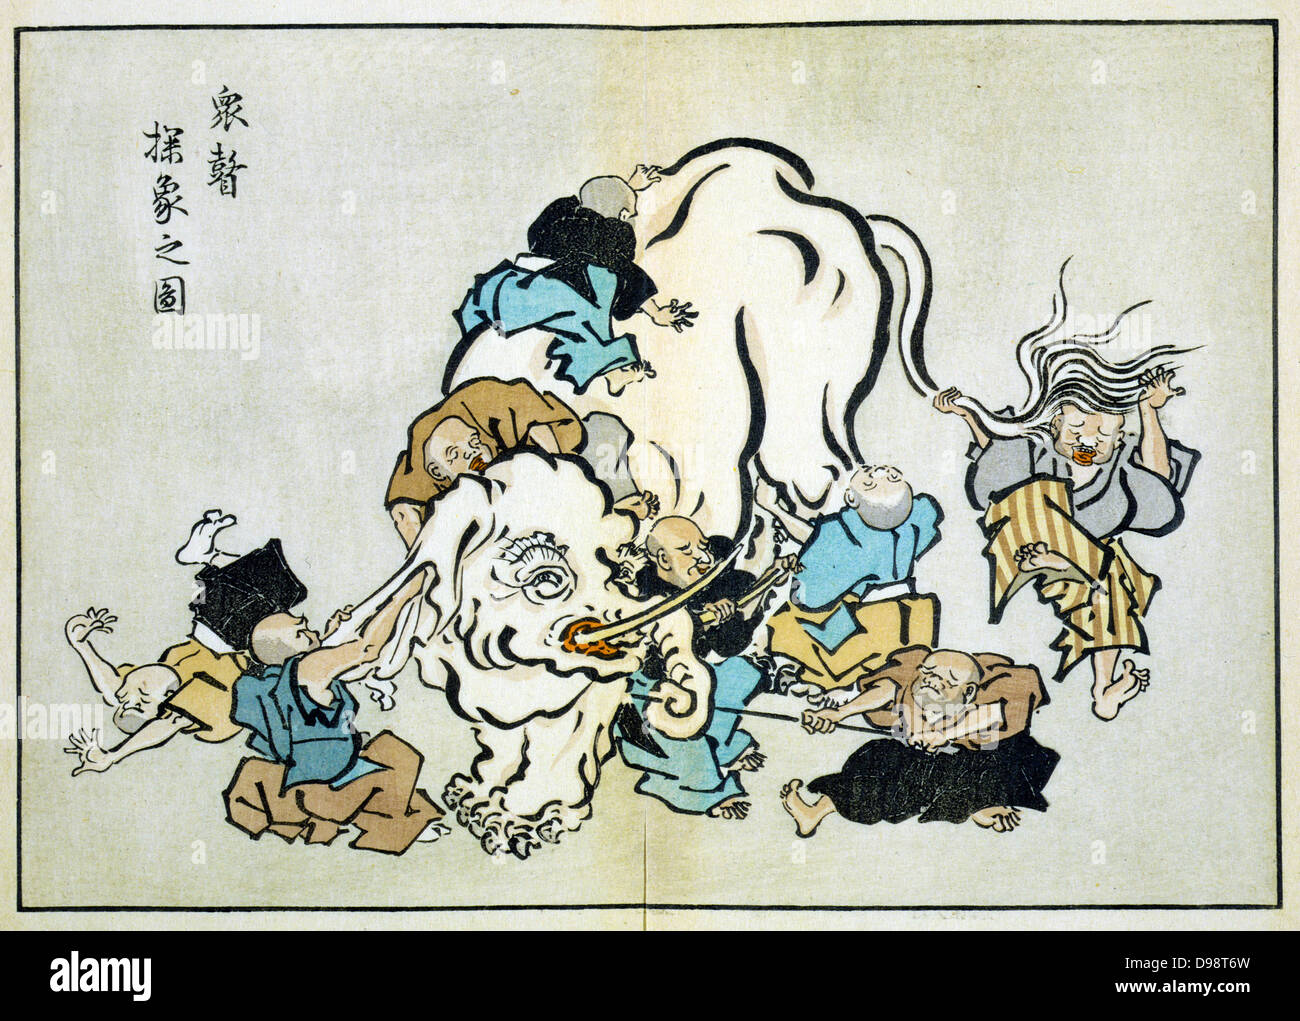 Blinde Mönche die Prüfung eines Elefanten: Abbildung: Buddhistische Gleichnis, wo jeder Mönch eine andere Schlussfolgerung, je nachdem, welcher Teil des Tieres untersucht er erreicht. Hanabusa Itcho (1652-1754), japanischer Künstler. Religion Buddhismus Stockfoto